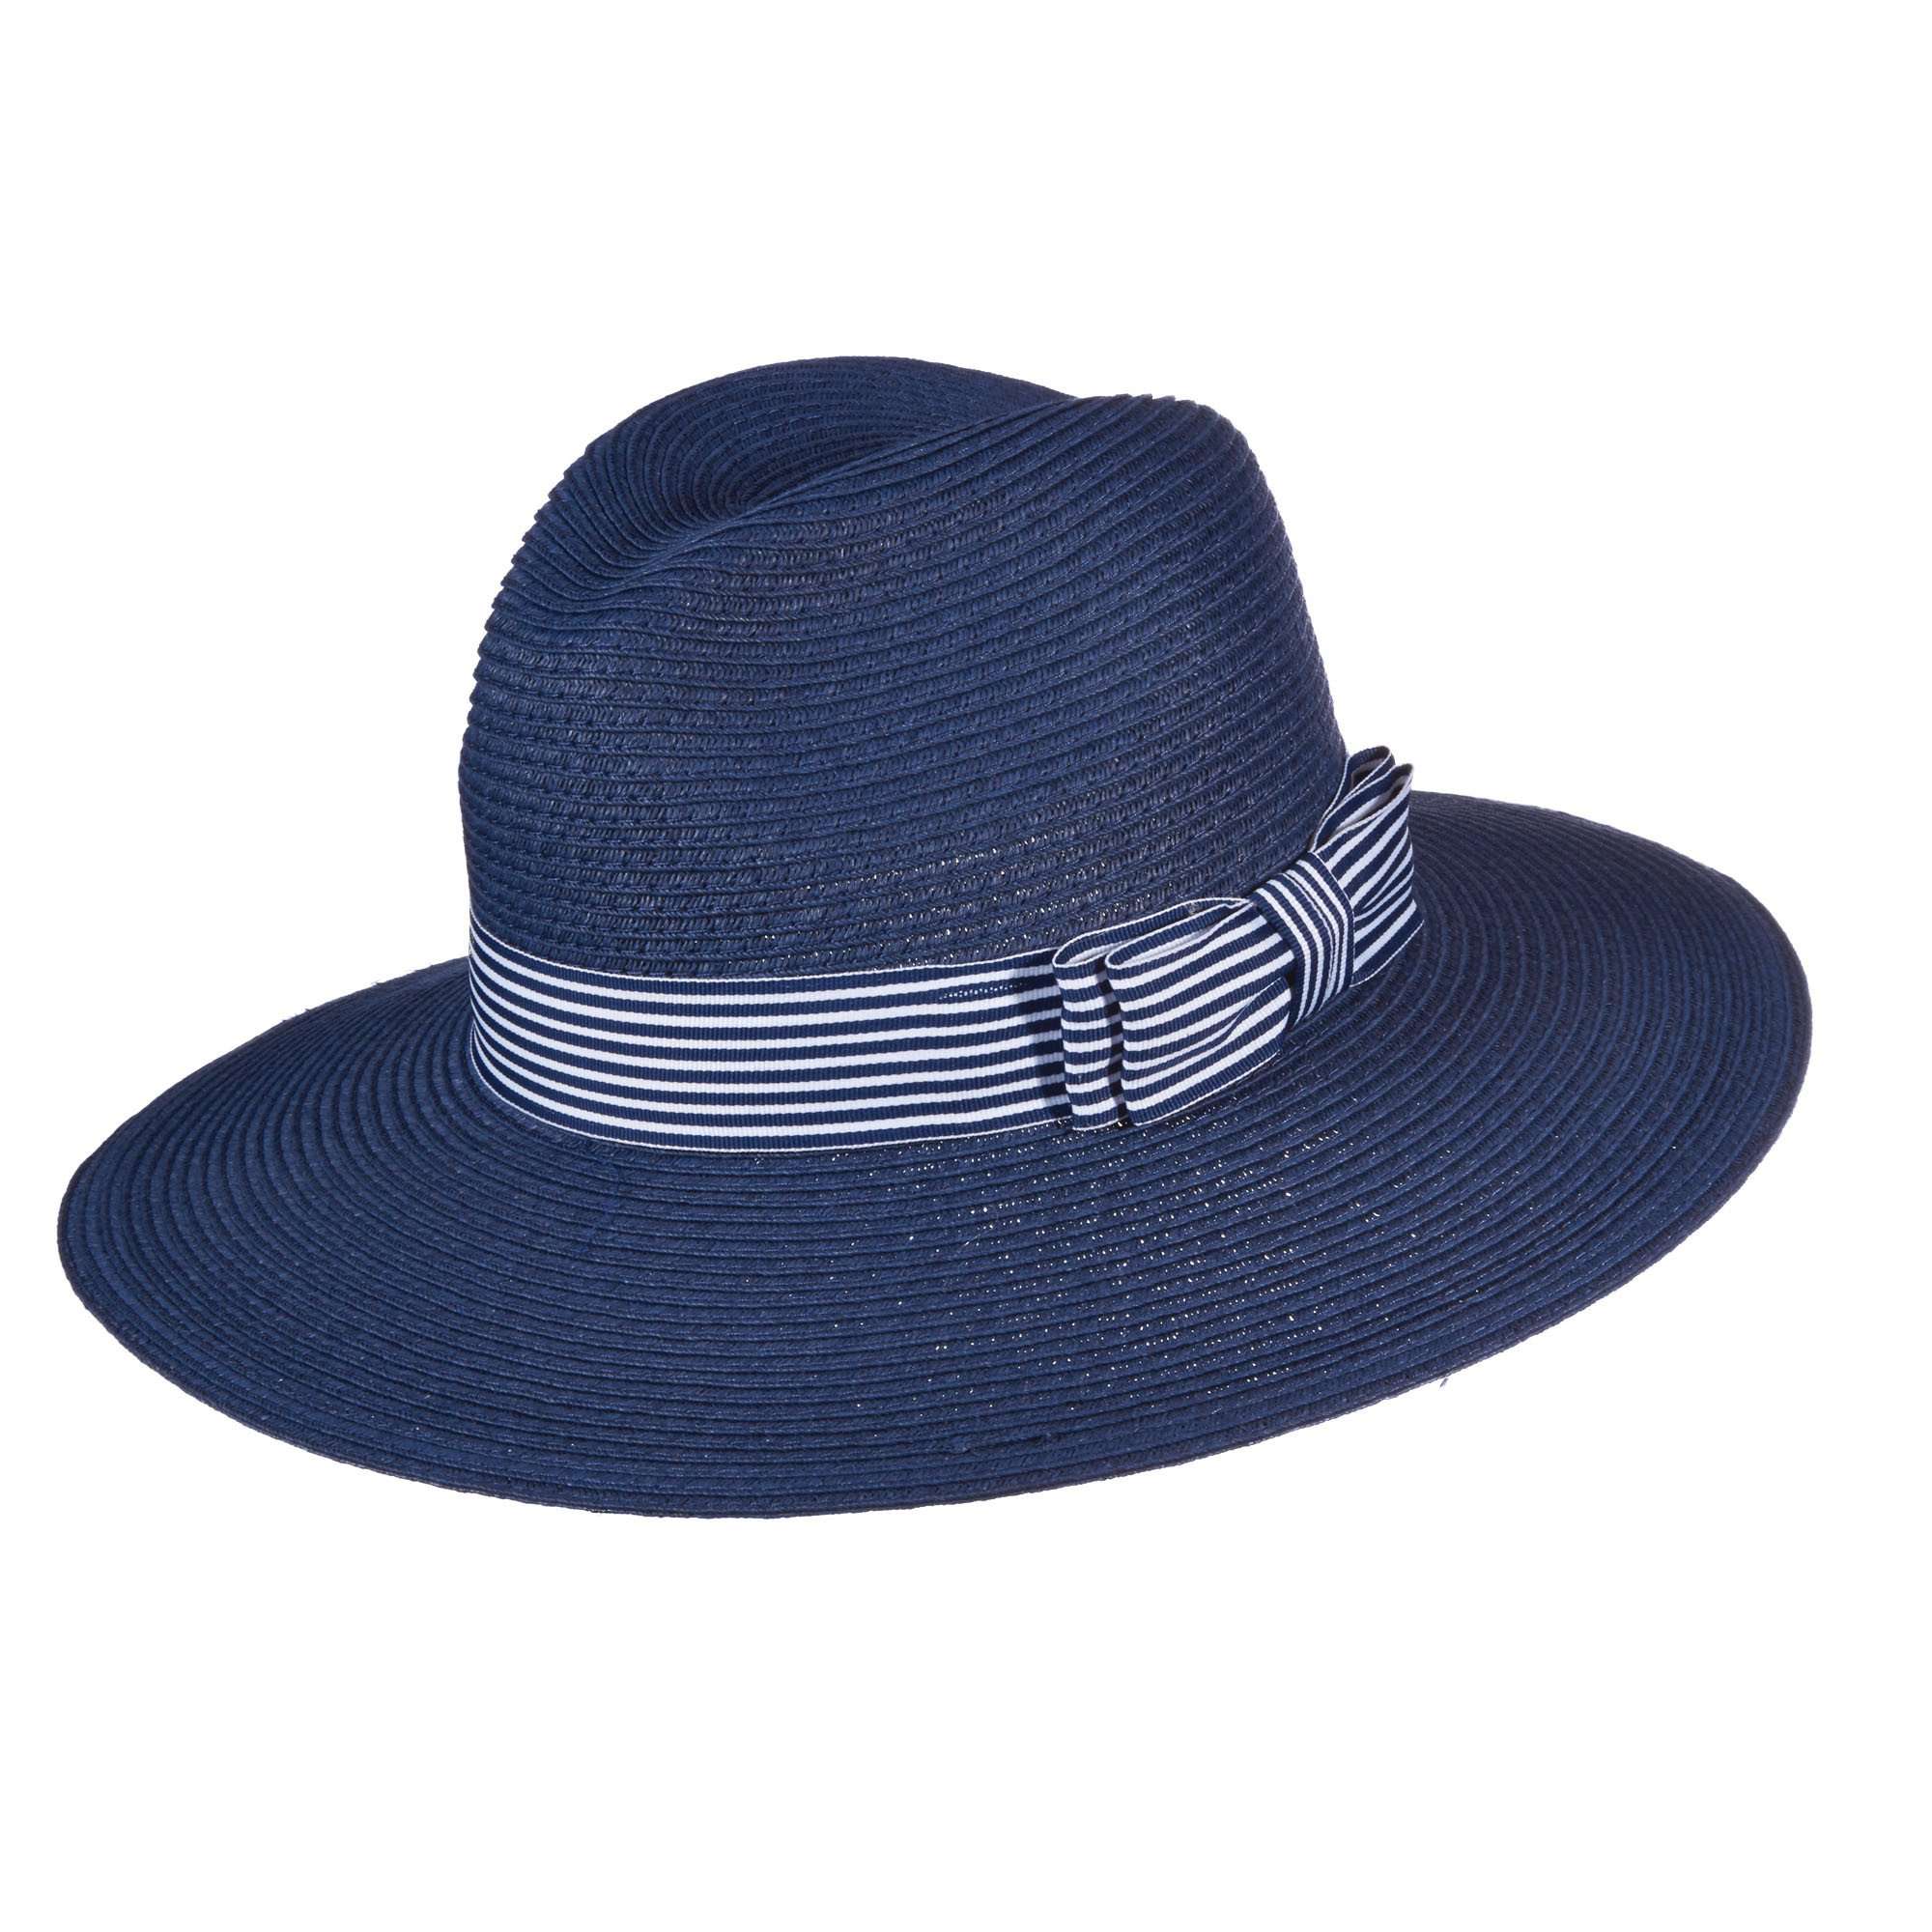 Callanan Safari Hat with Striped Band Safari Hat Callanan Hats cr253nv Navy Medium (57 cm) 